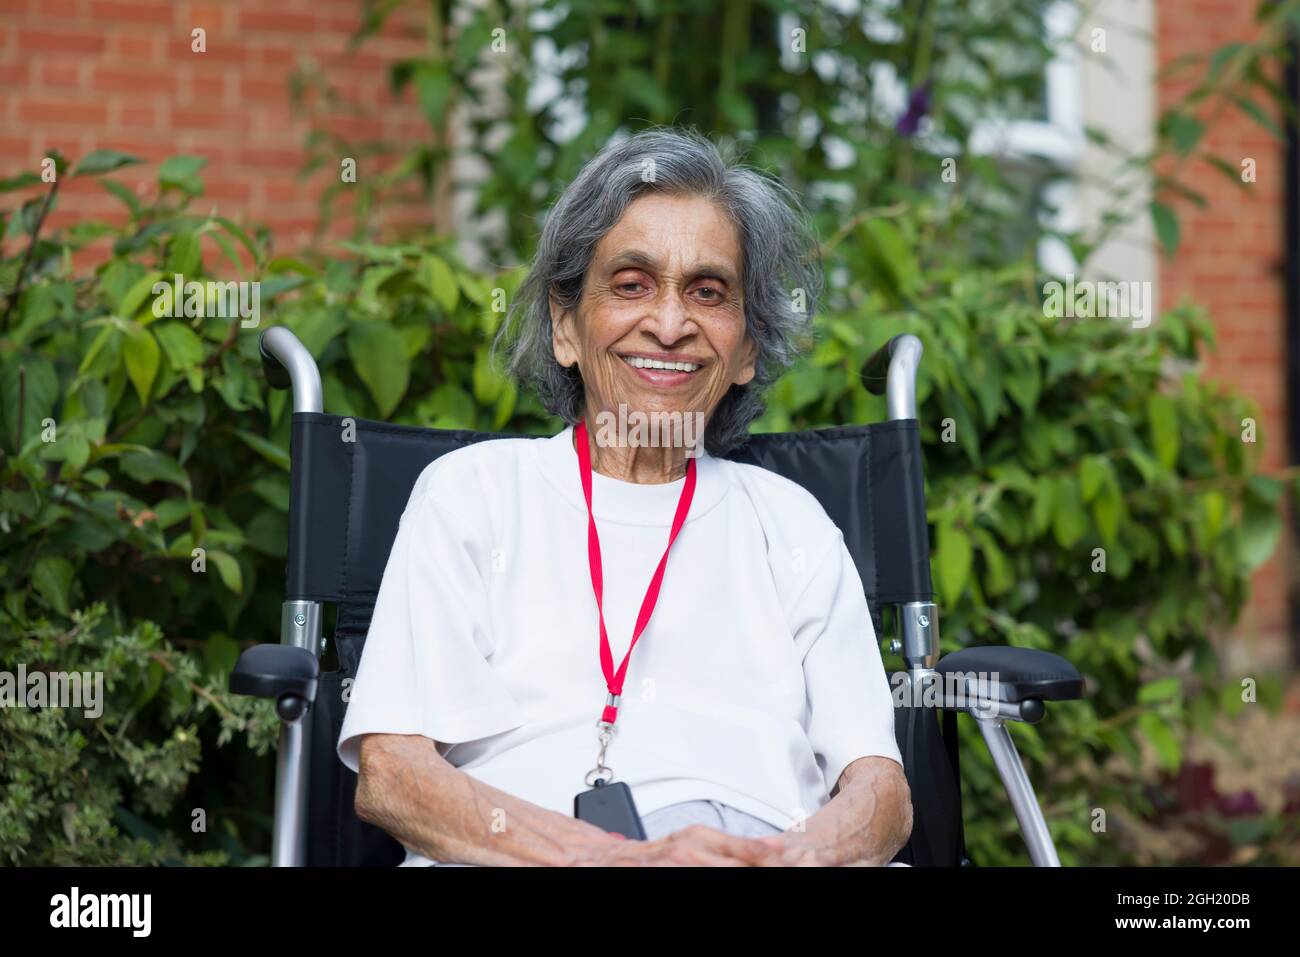 Medizin - Alte asiatische indische Frau, die lächelnd in einem Rollstuhl in einem Pflegeheim, Pflegeheim oder Garten sitzt, Großbritannien. Zeigt die Gesundheitsversorgung und den Ruhestand älterer Menschen Stockfoto